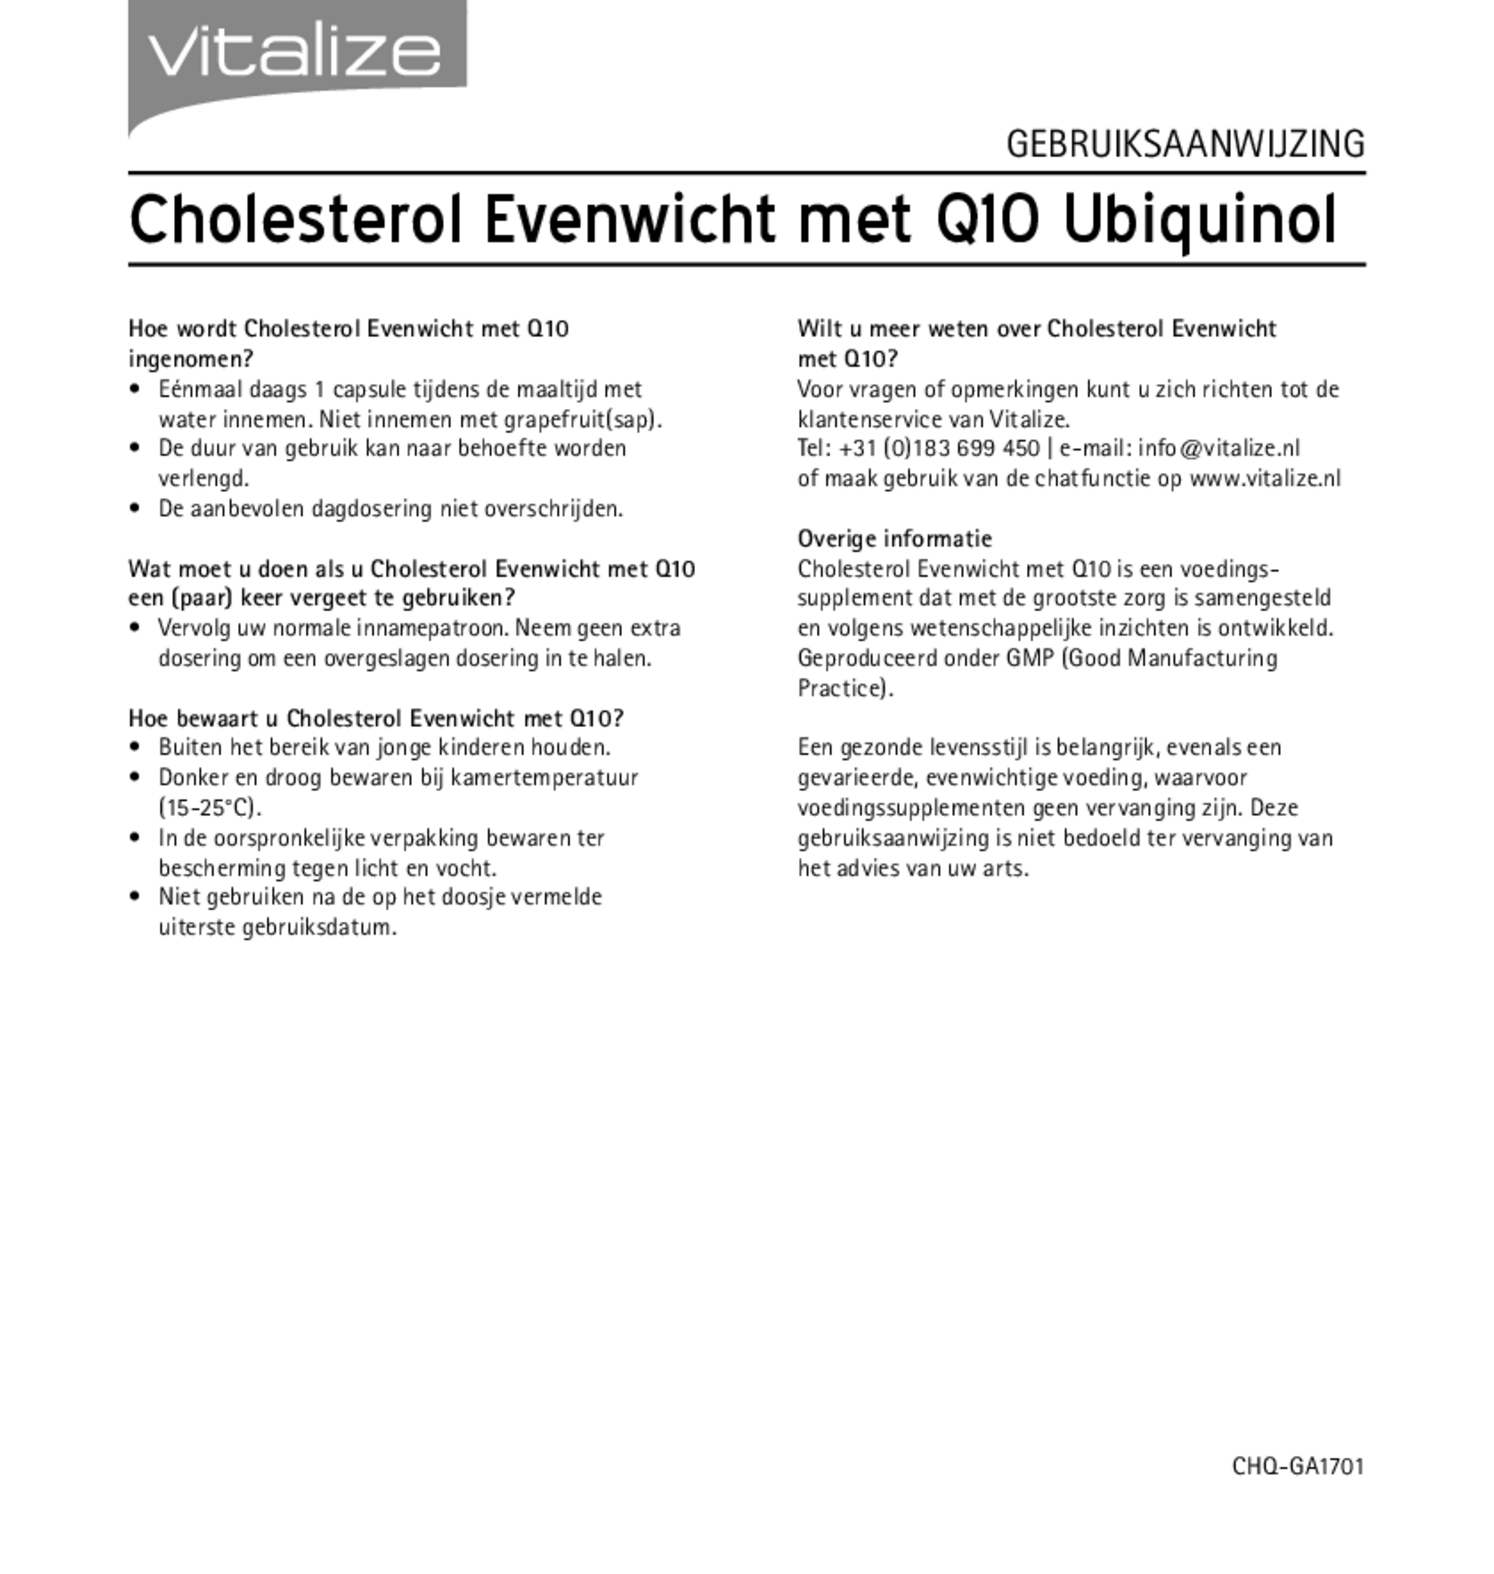 Cholesterol Evenwicht + Q10 Capsules afbeelding van document #2, gebruiksaanwijzing